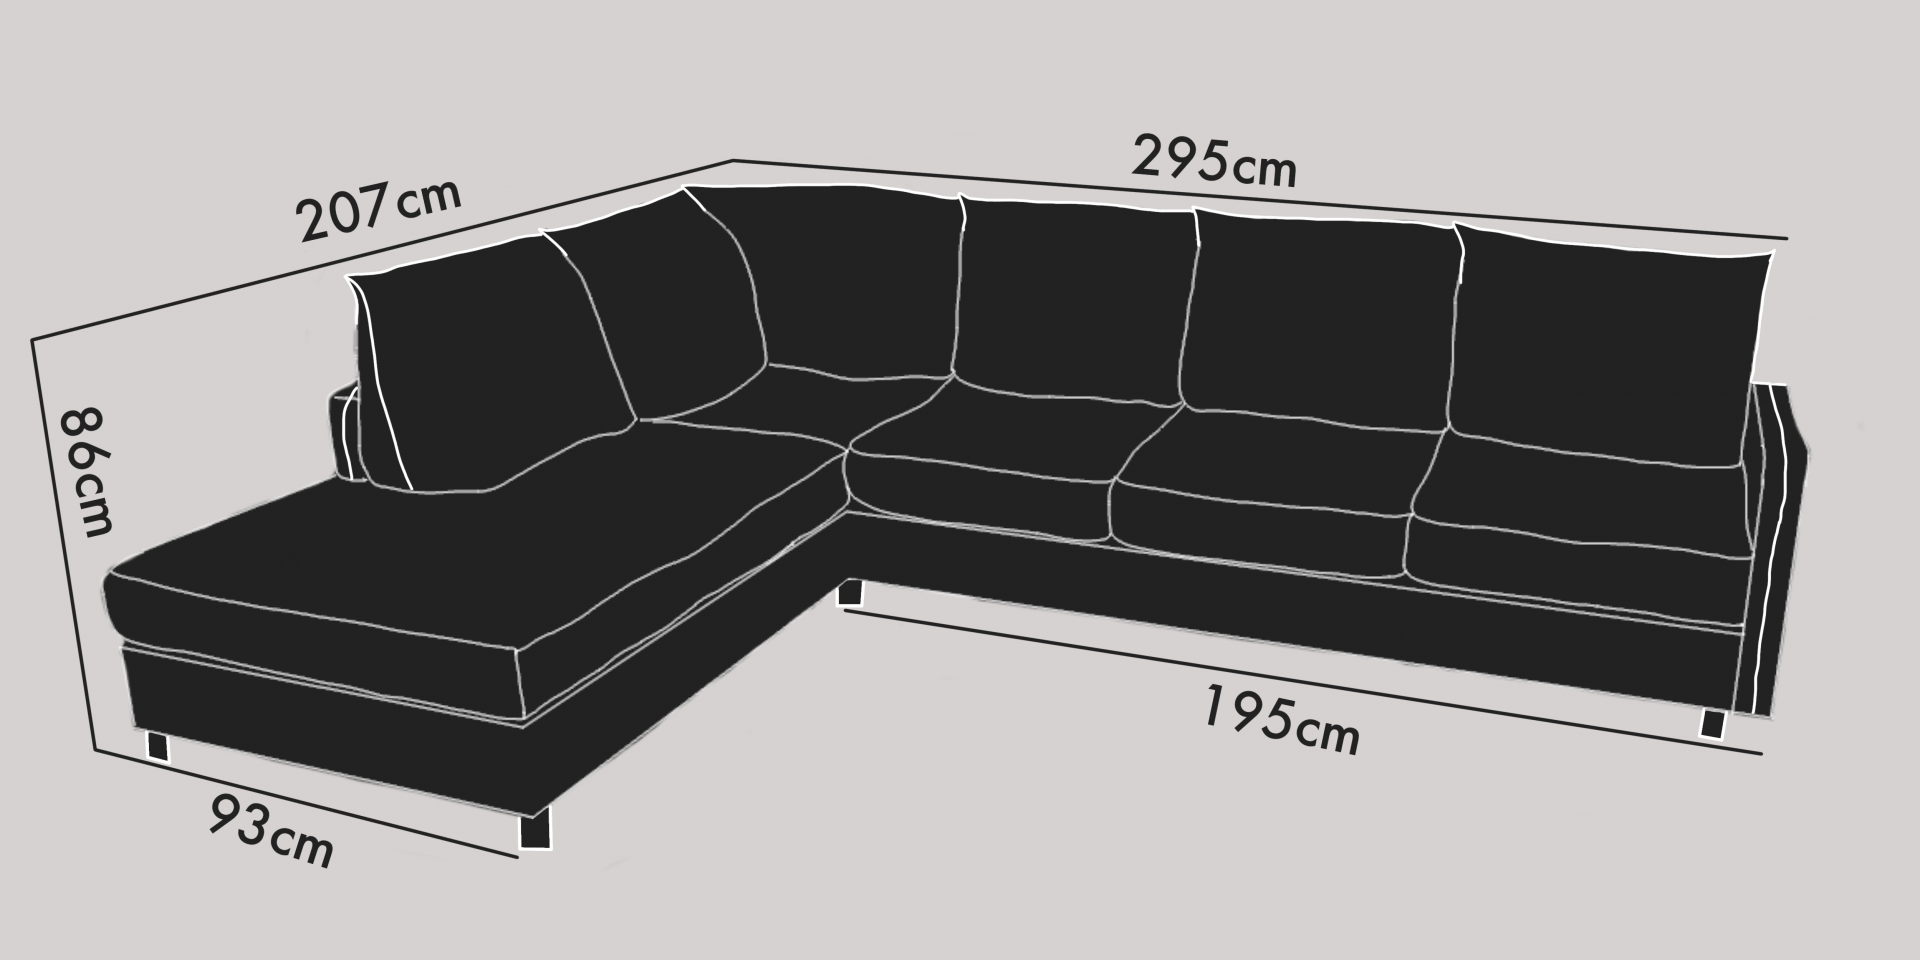 3-sits soffa large m öppet avslut vänster